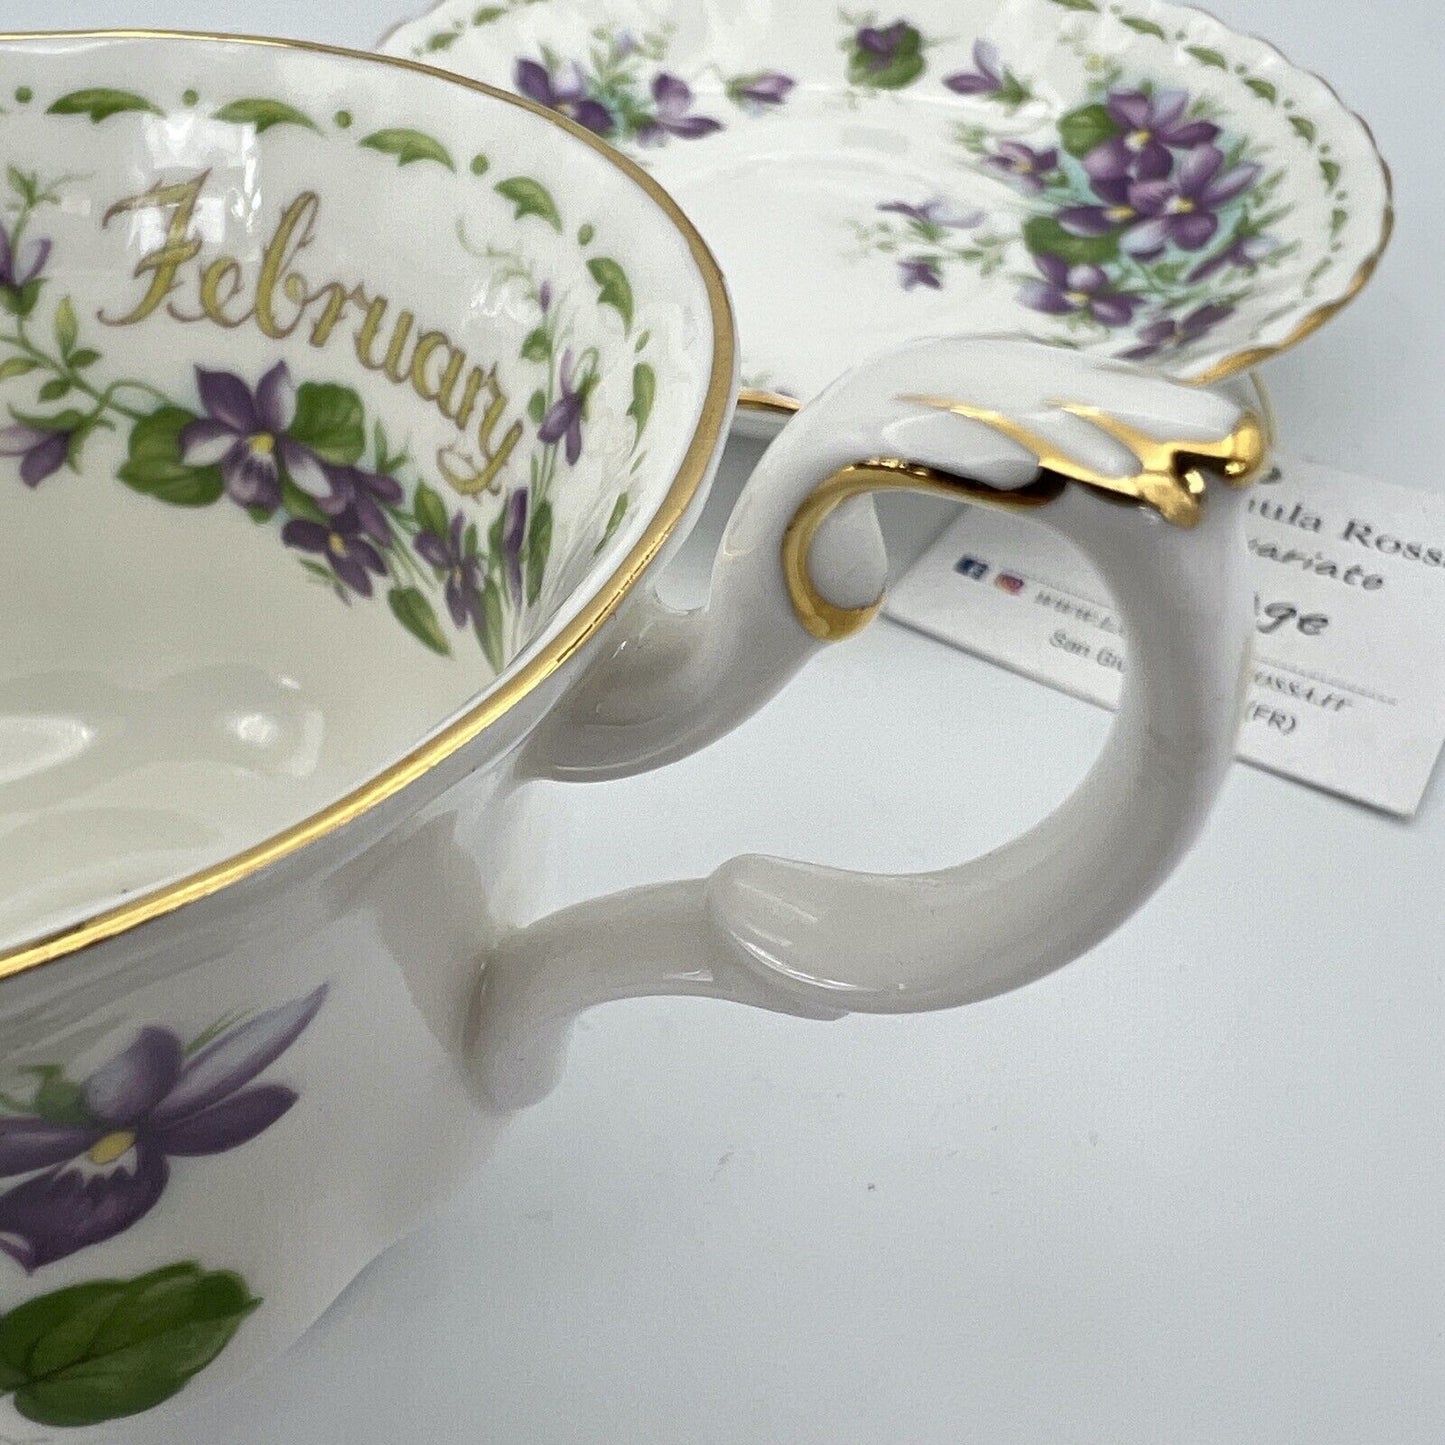 Tazza da tè The in porcellana Royal Albert con mese tazzina inglese FEBBRAIO 900